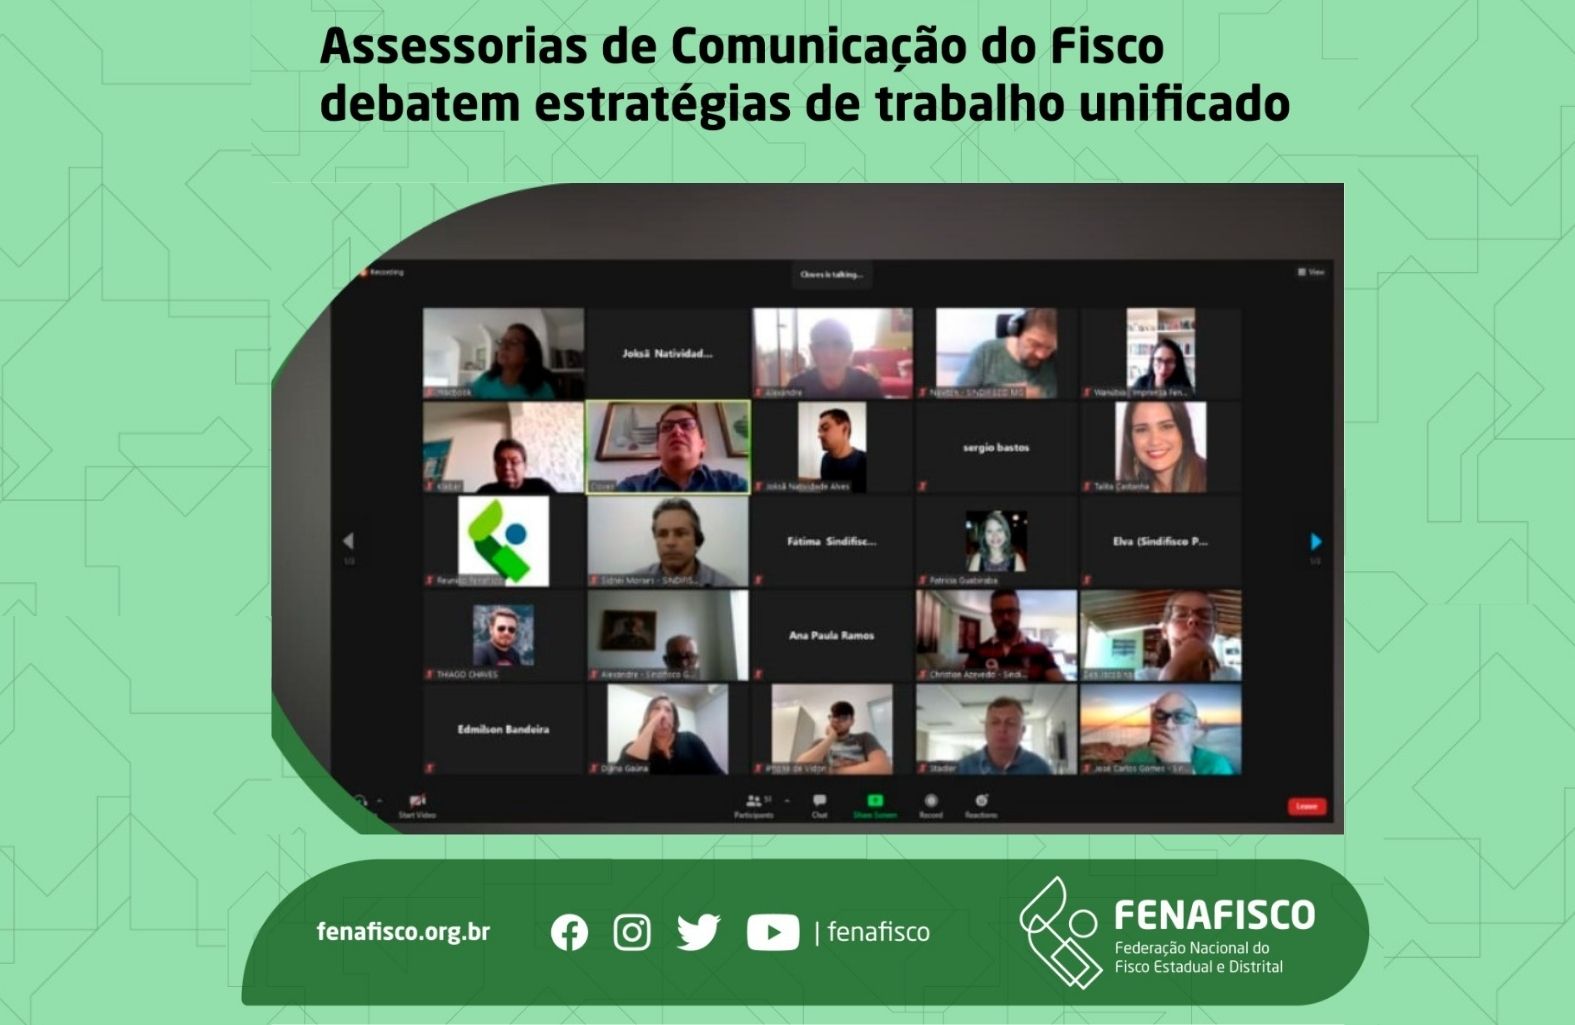 Assessorias de Comunicação do Fisco debatem estratégias de trabalho unificado